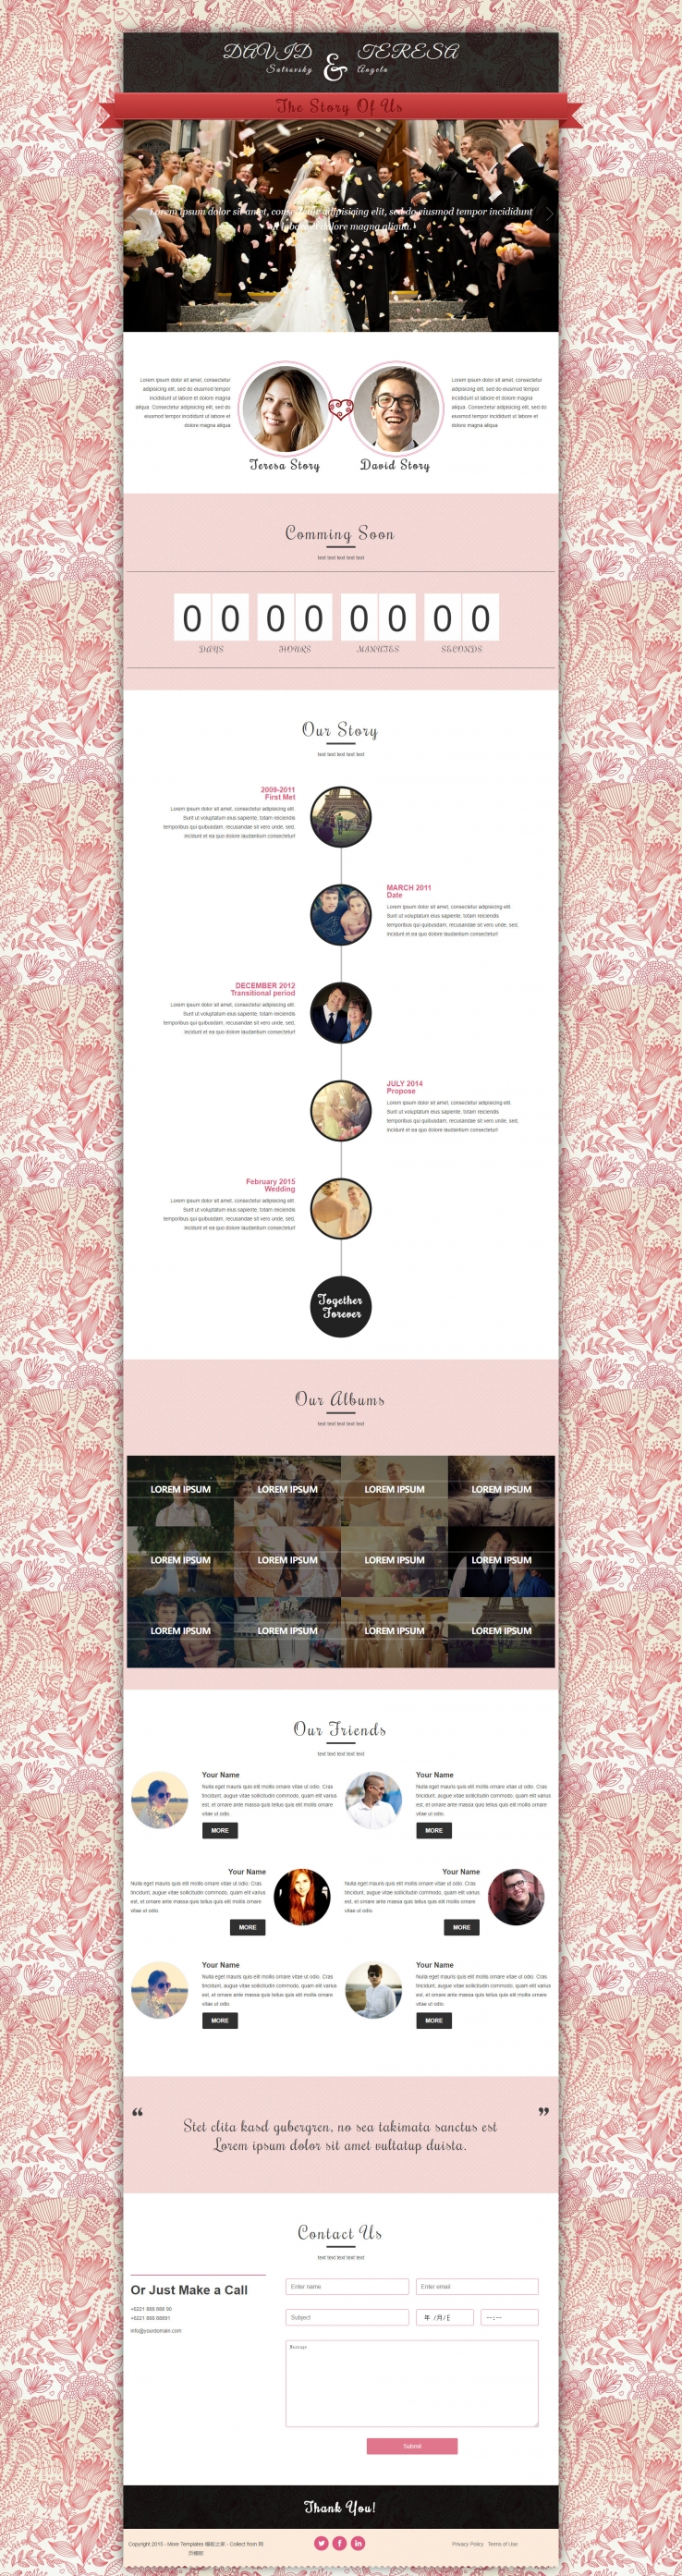 粉色花纹背景的婚庆公司企业网站模板下载